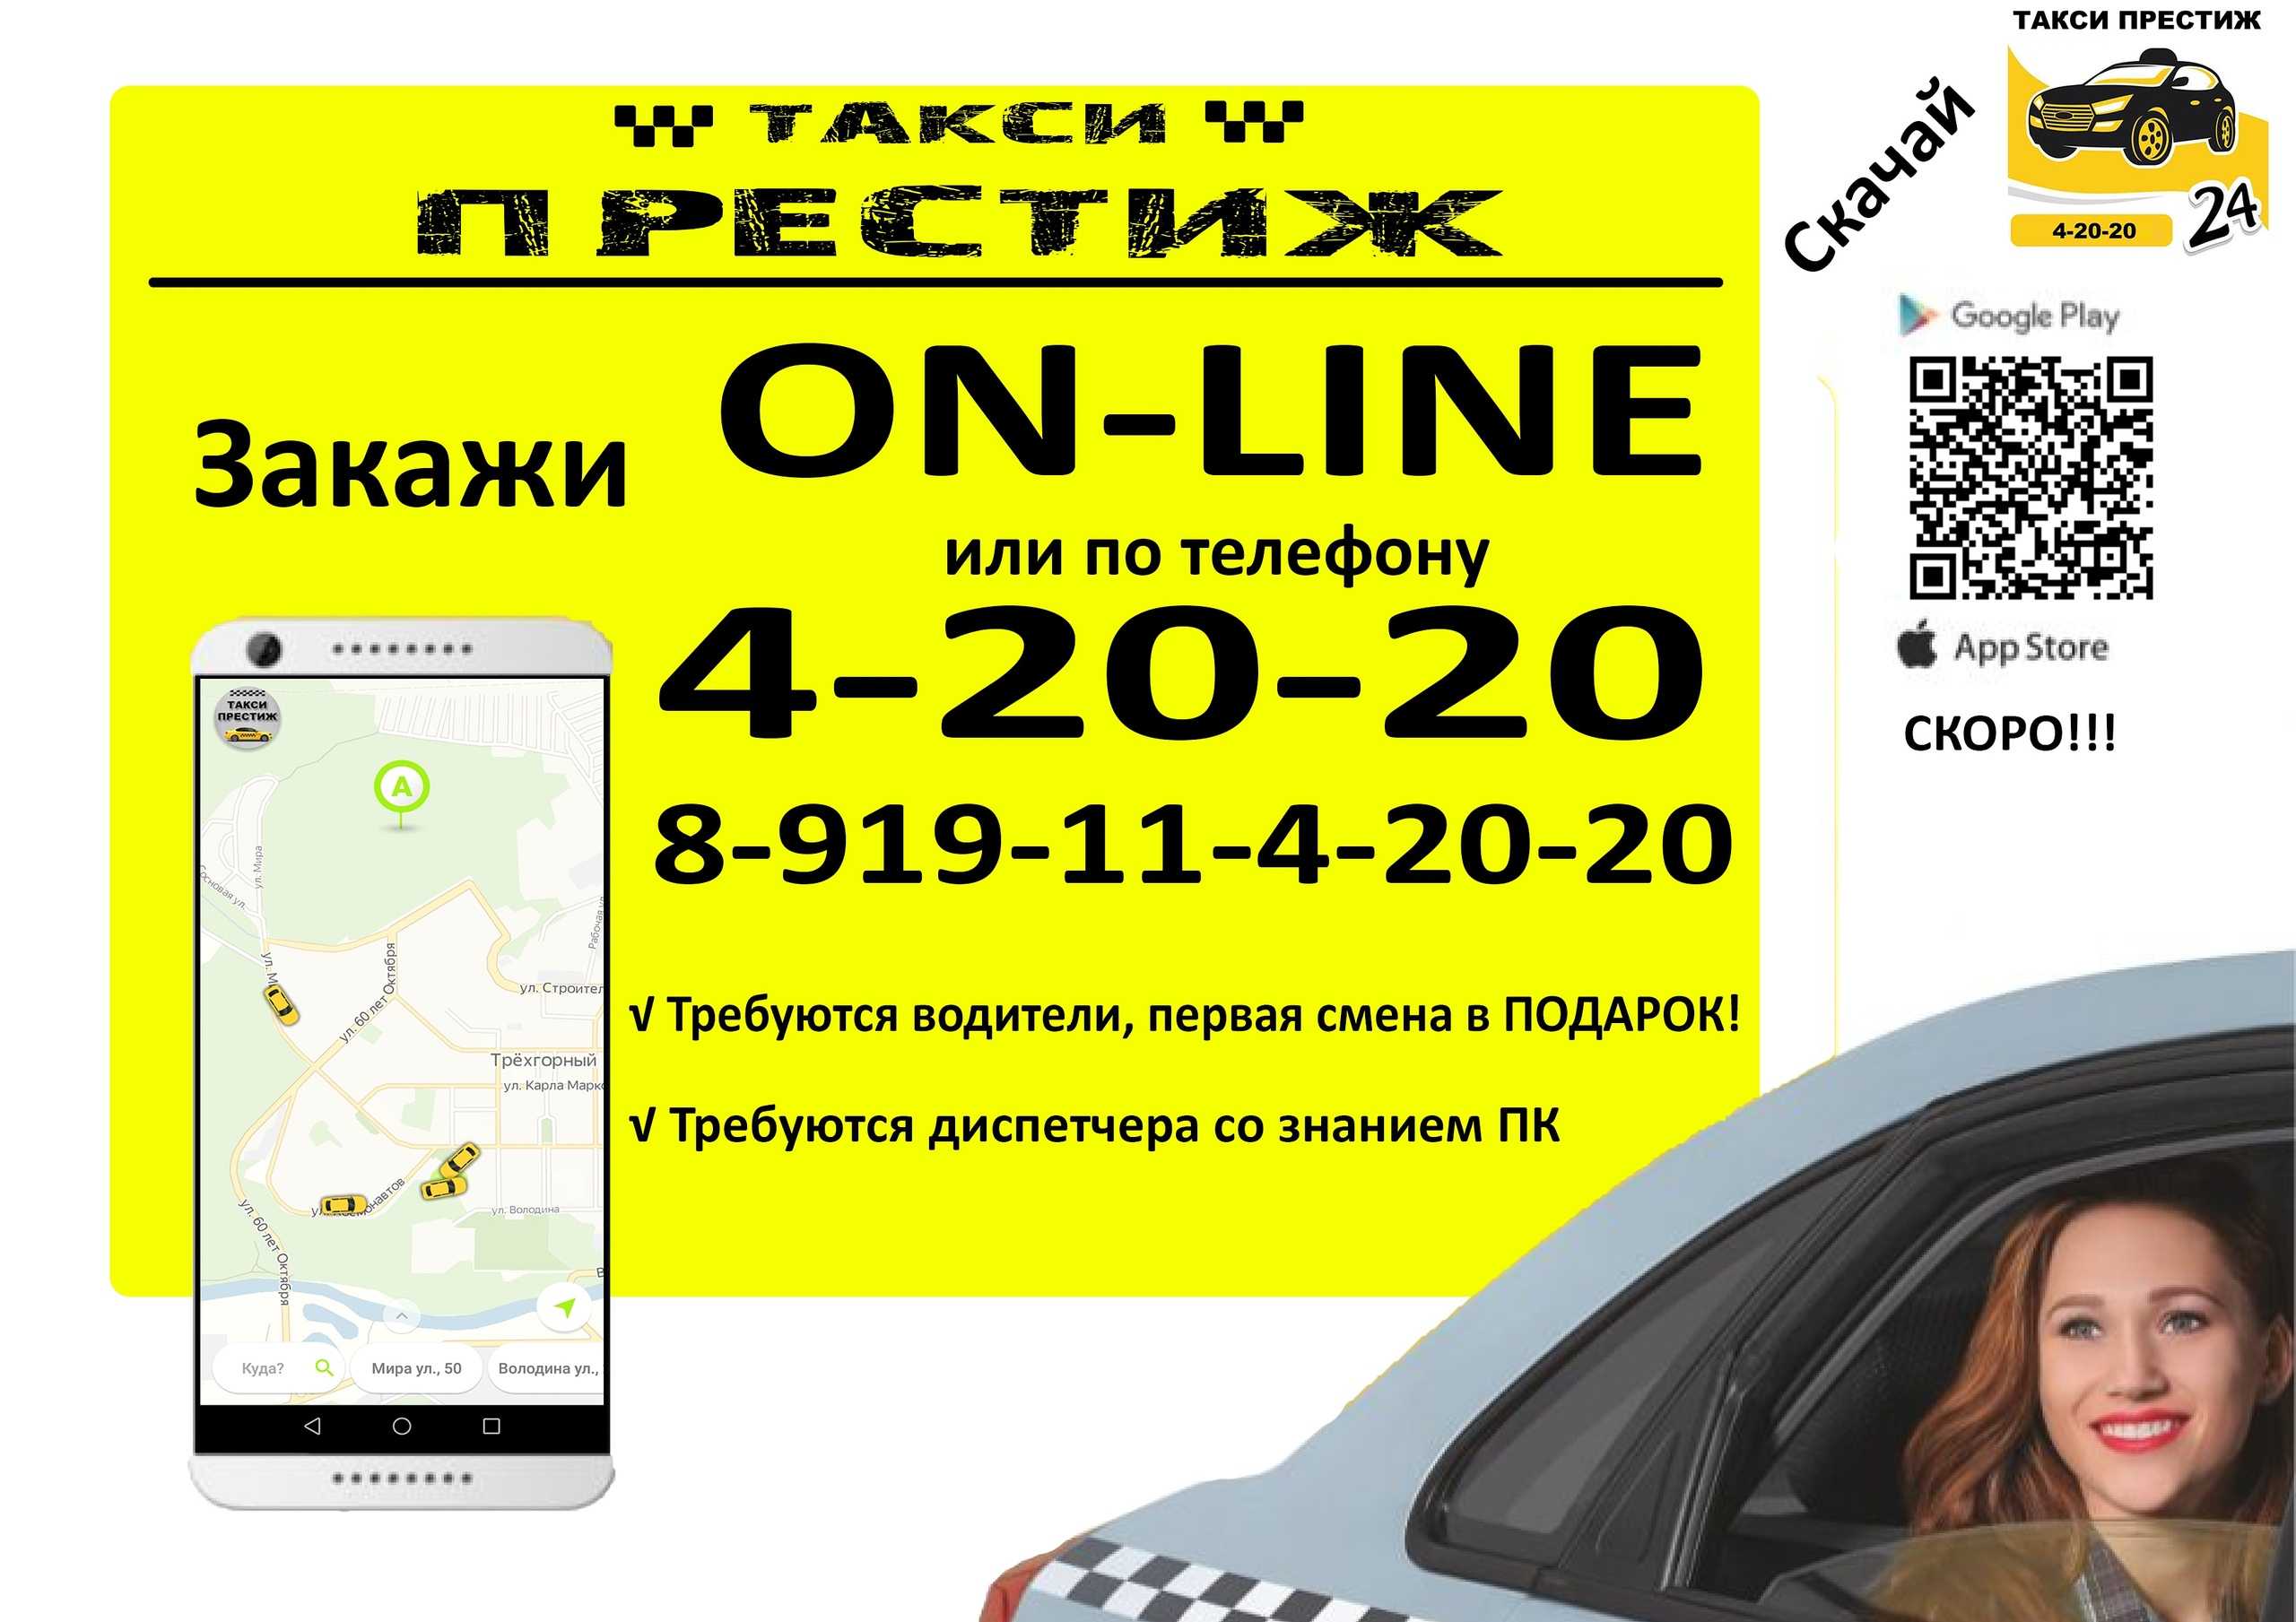 Taxi and Phone. Такси трехгорный